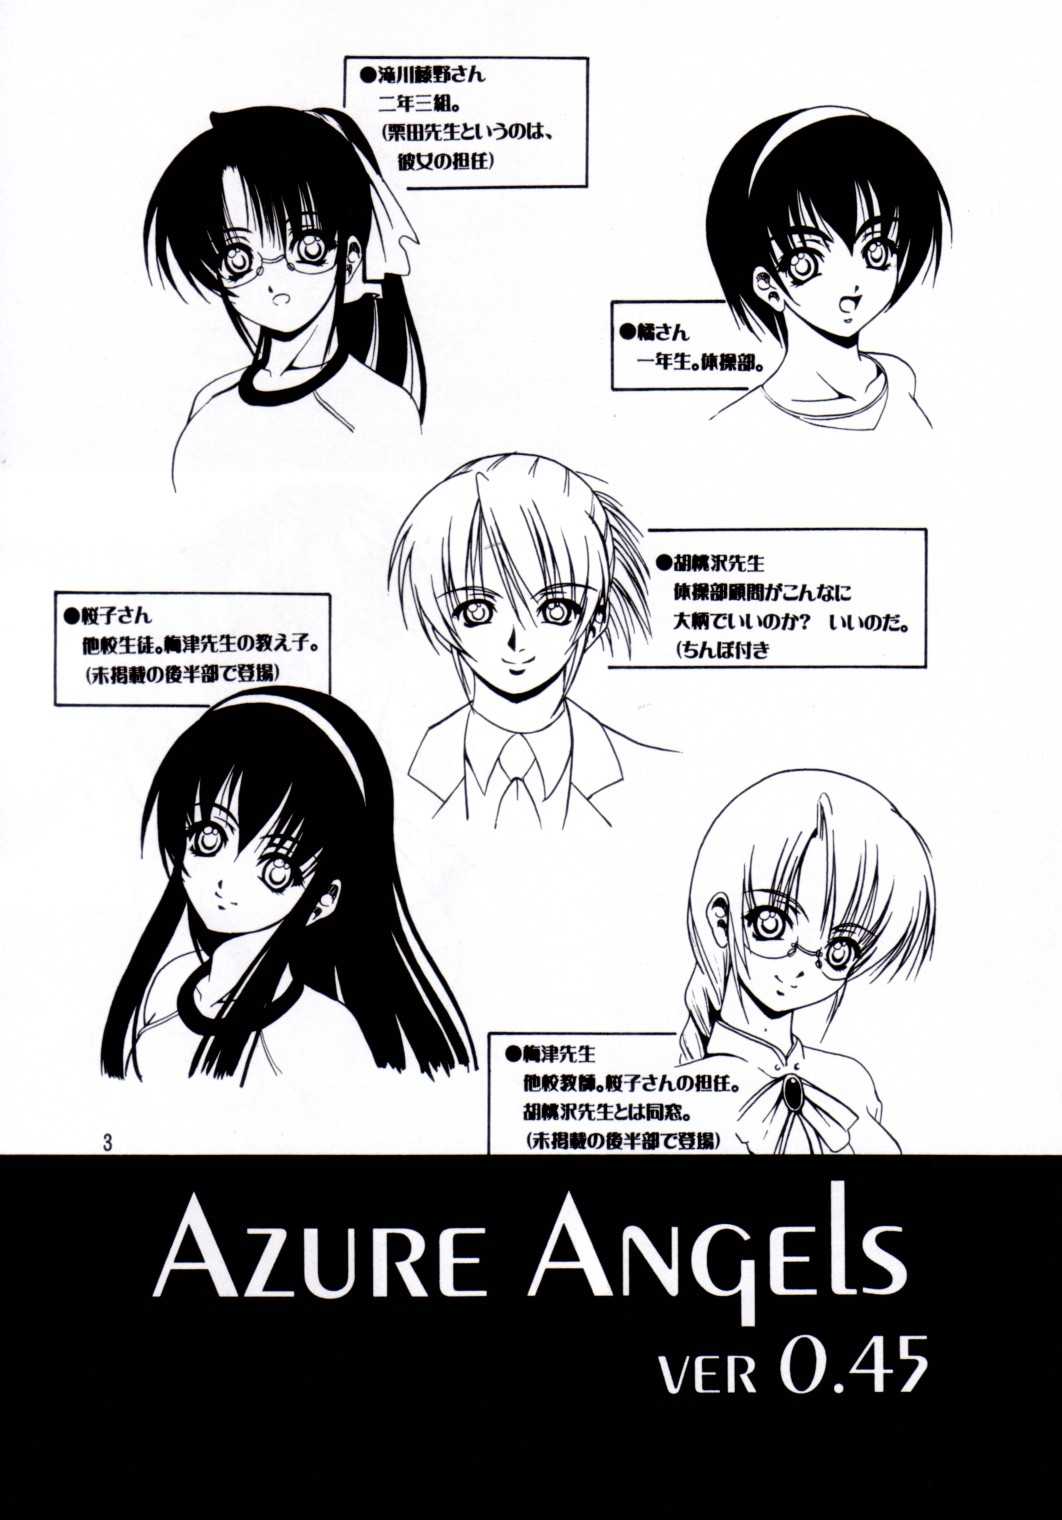 (同人誌) [菊花酒楼] 瑠璃天使 Ver.0.45 (Azure Angels) 